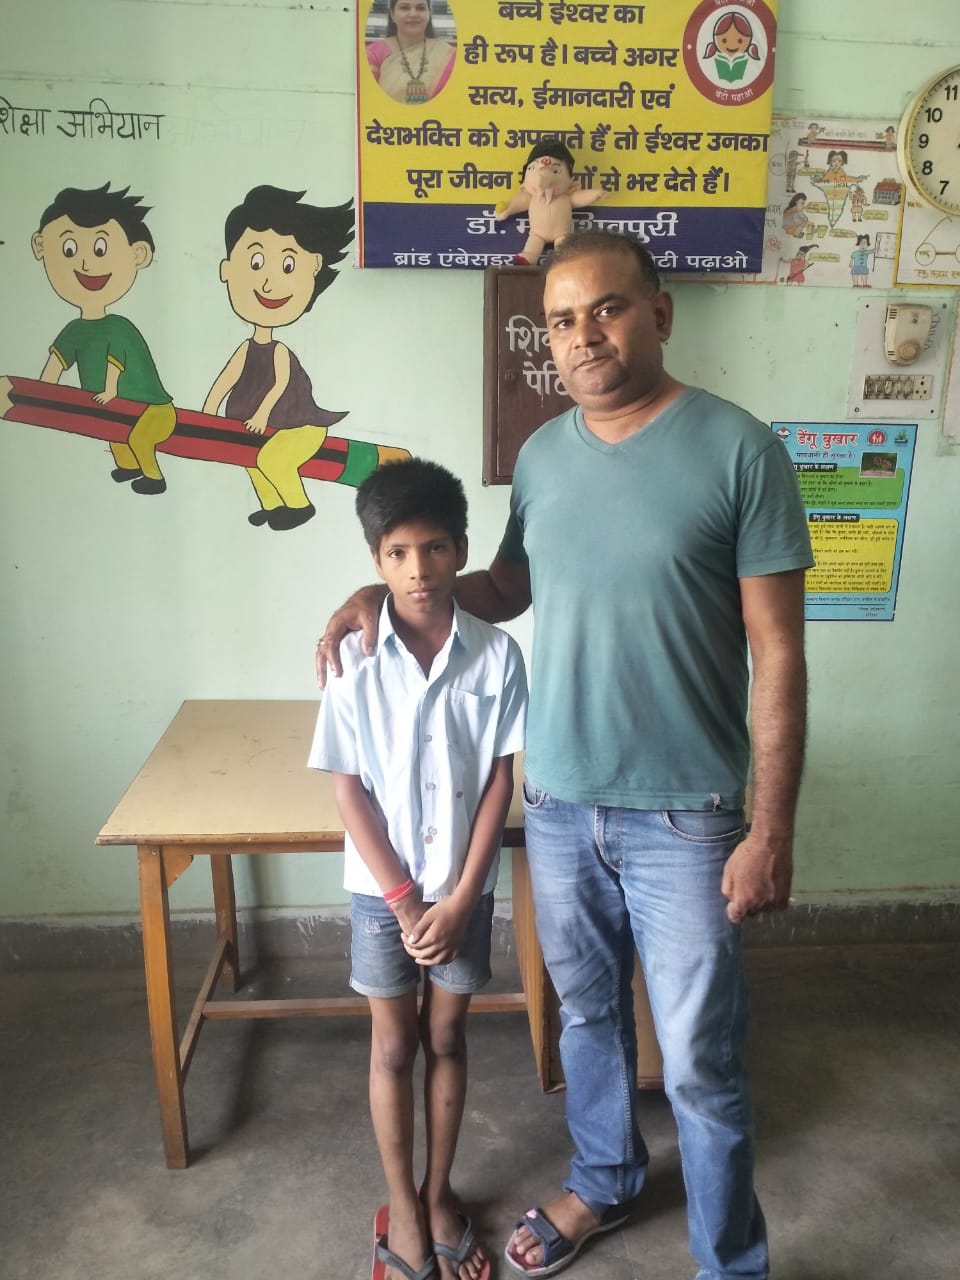 हर की पौड़ी से मिले लावारिस बालक को पुलिस ने विश्वास में लेकर पूछताछ करके बालग्रह रोशनाबाद भेजा, परिजनों से मिलवाने का किया जा रहा है प्रयास